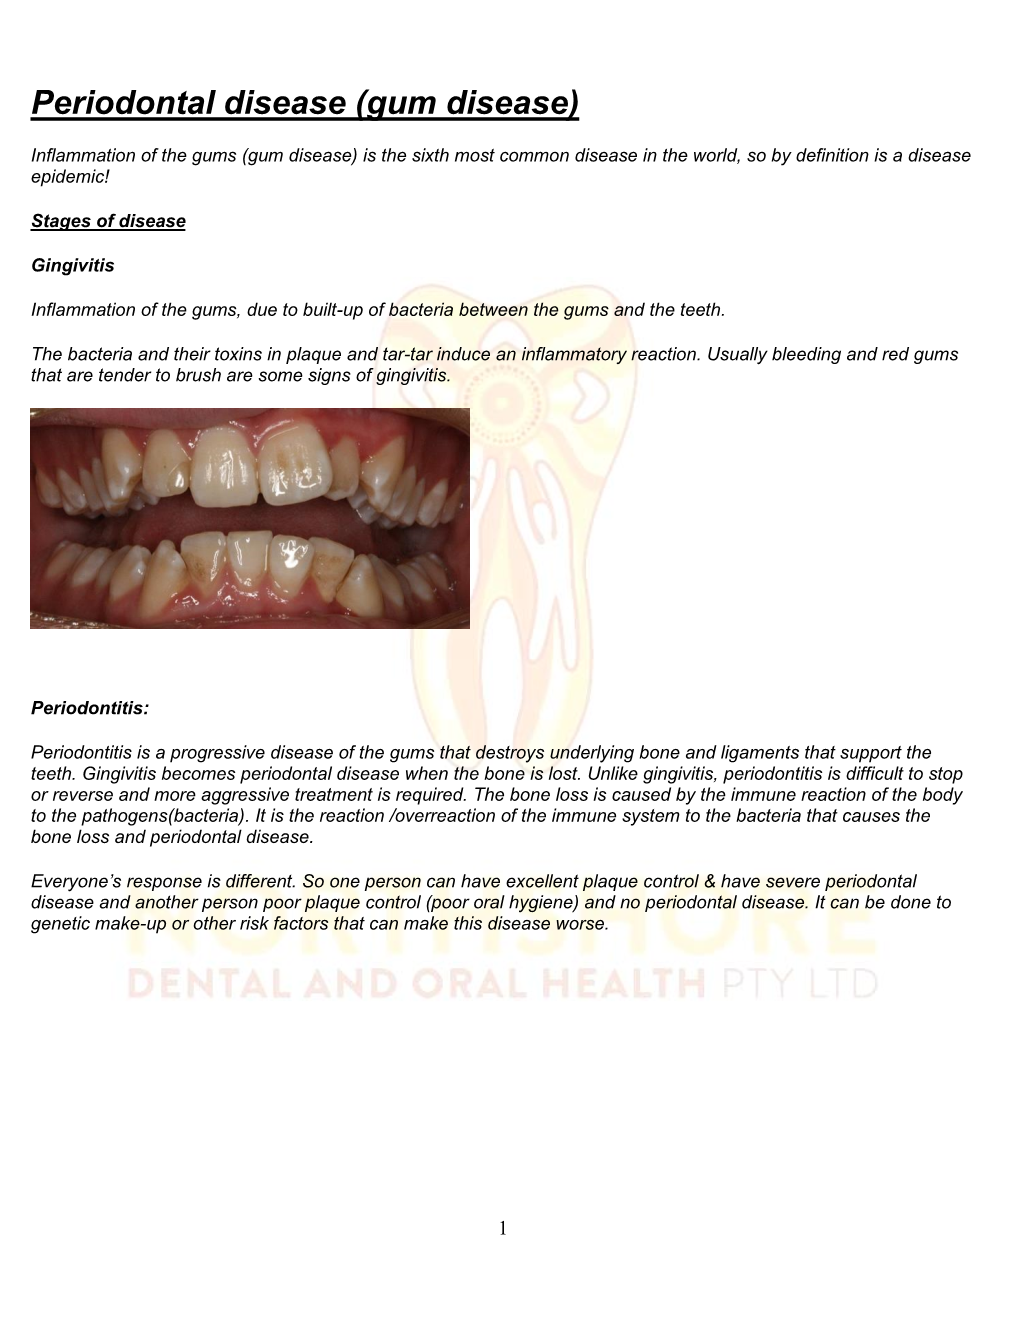 Periodontal Disease (Gum Disease)